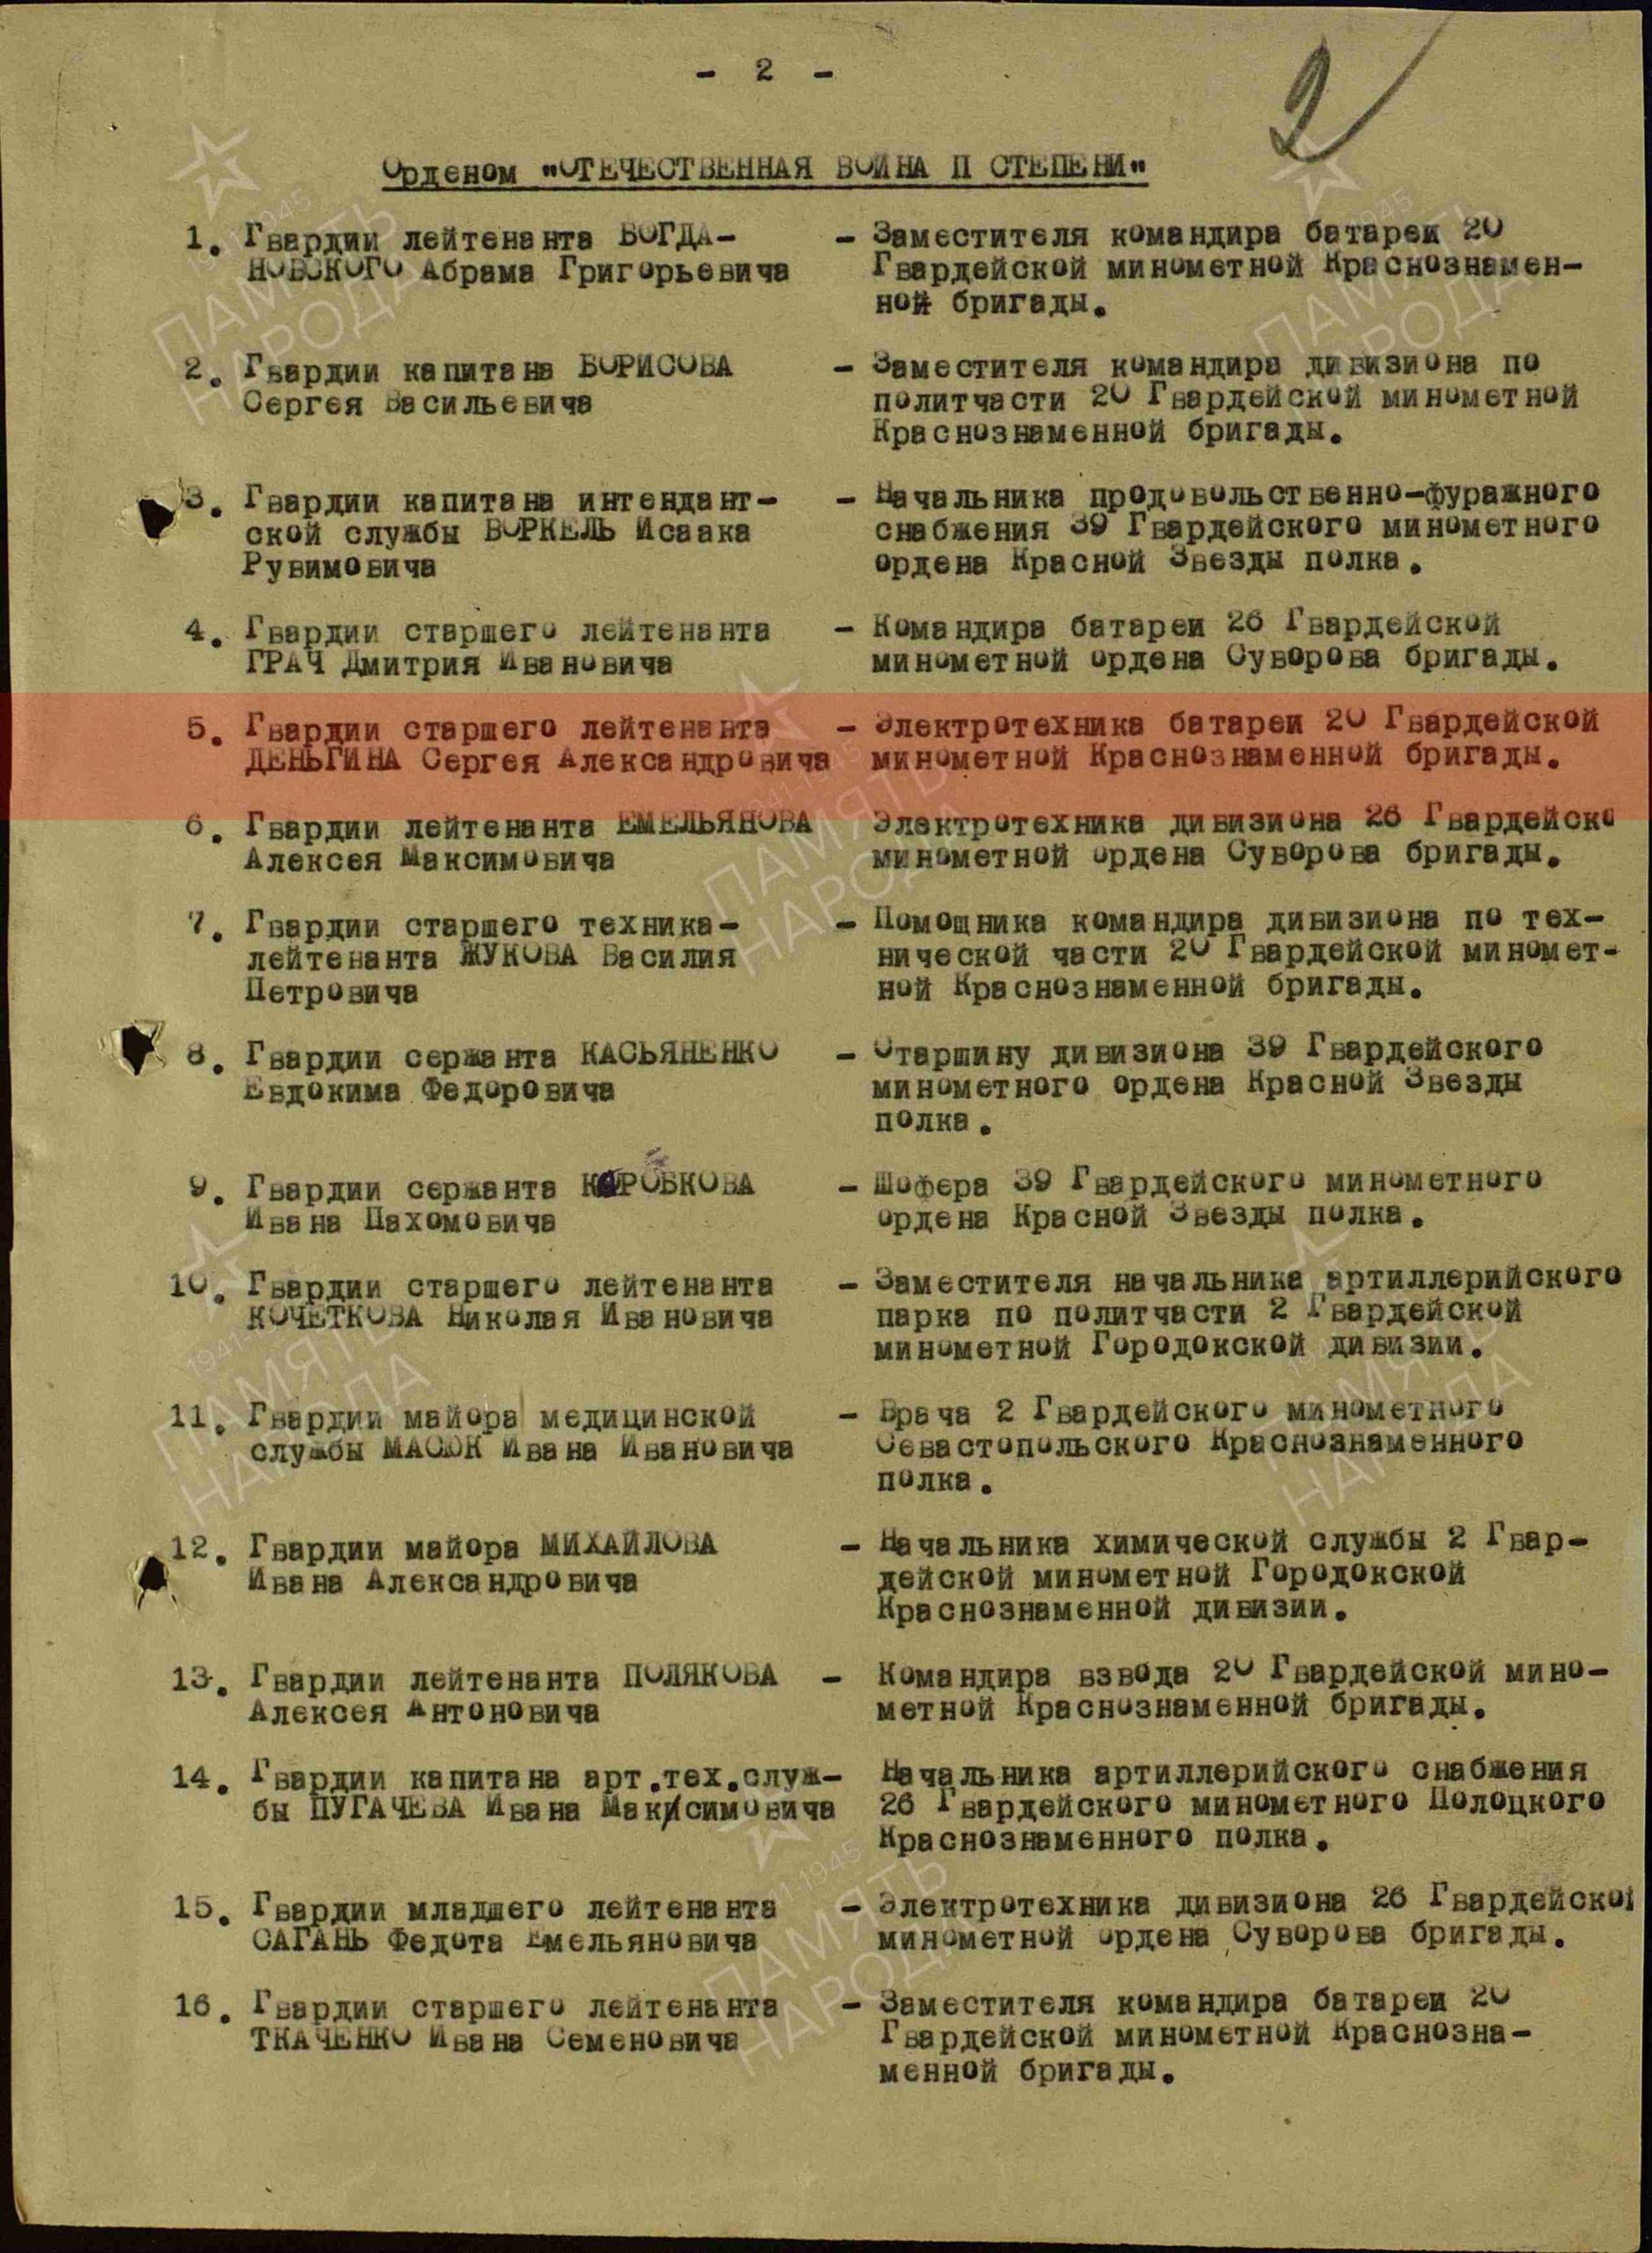  Лист приказа о награждении (строка в наградном списке). Орден Отечественной войны II степени